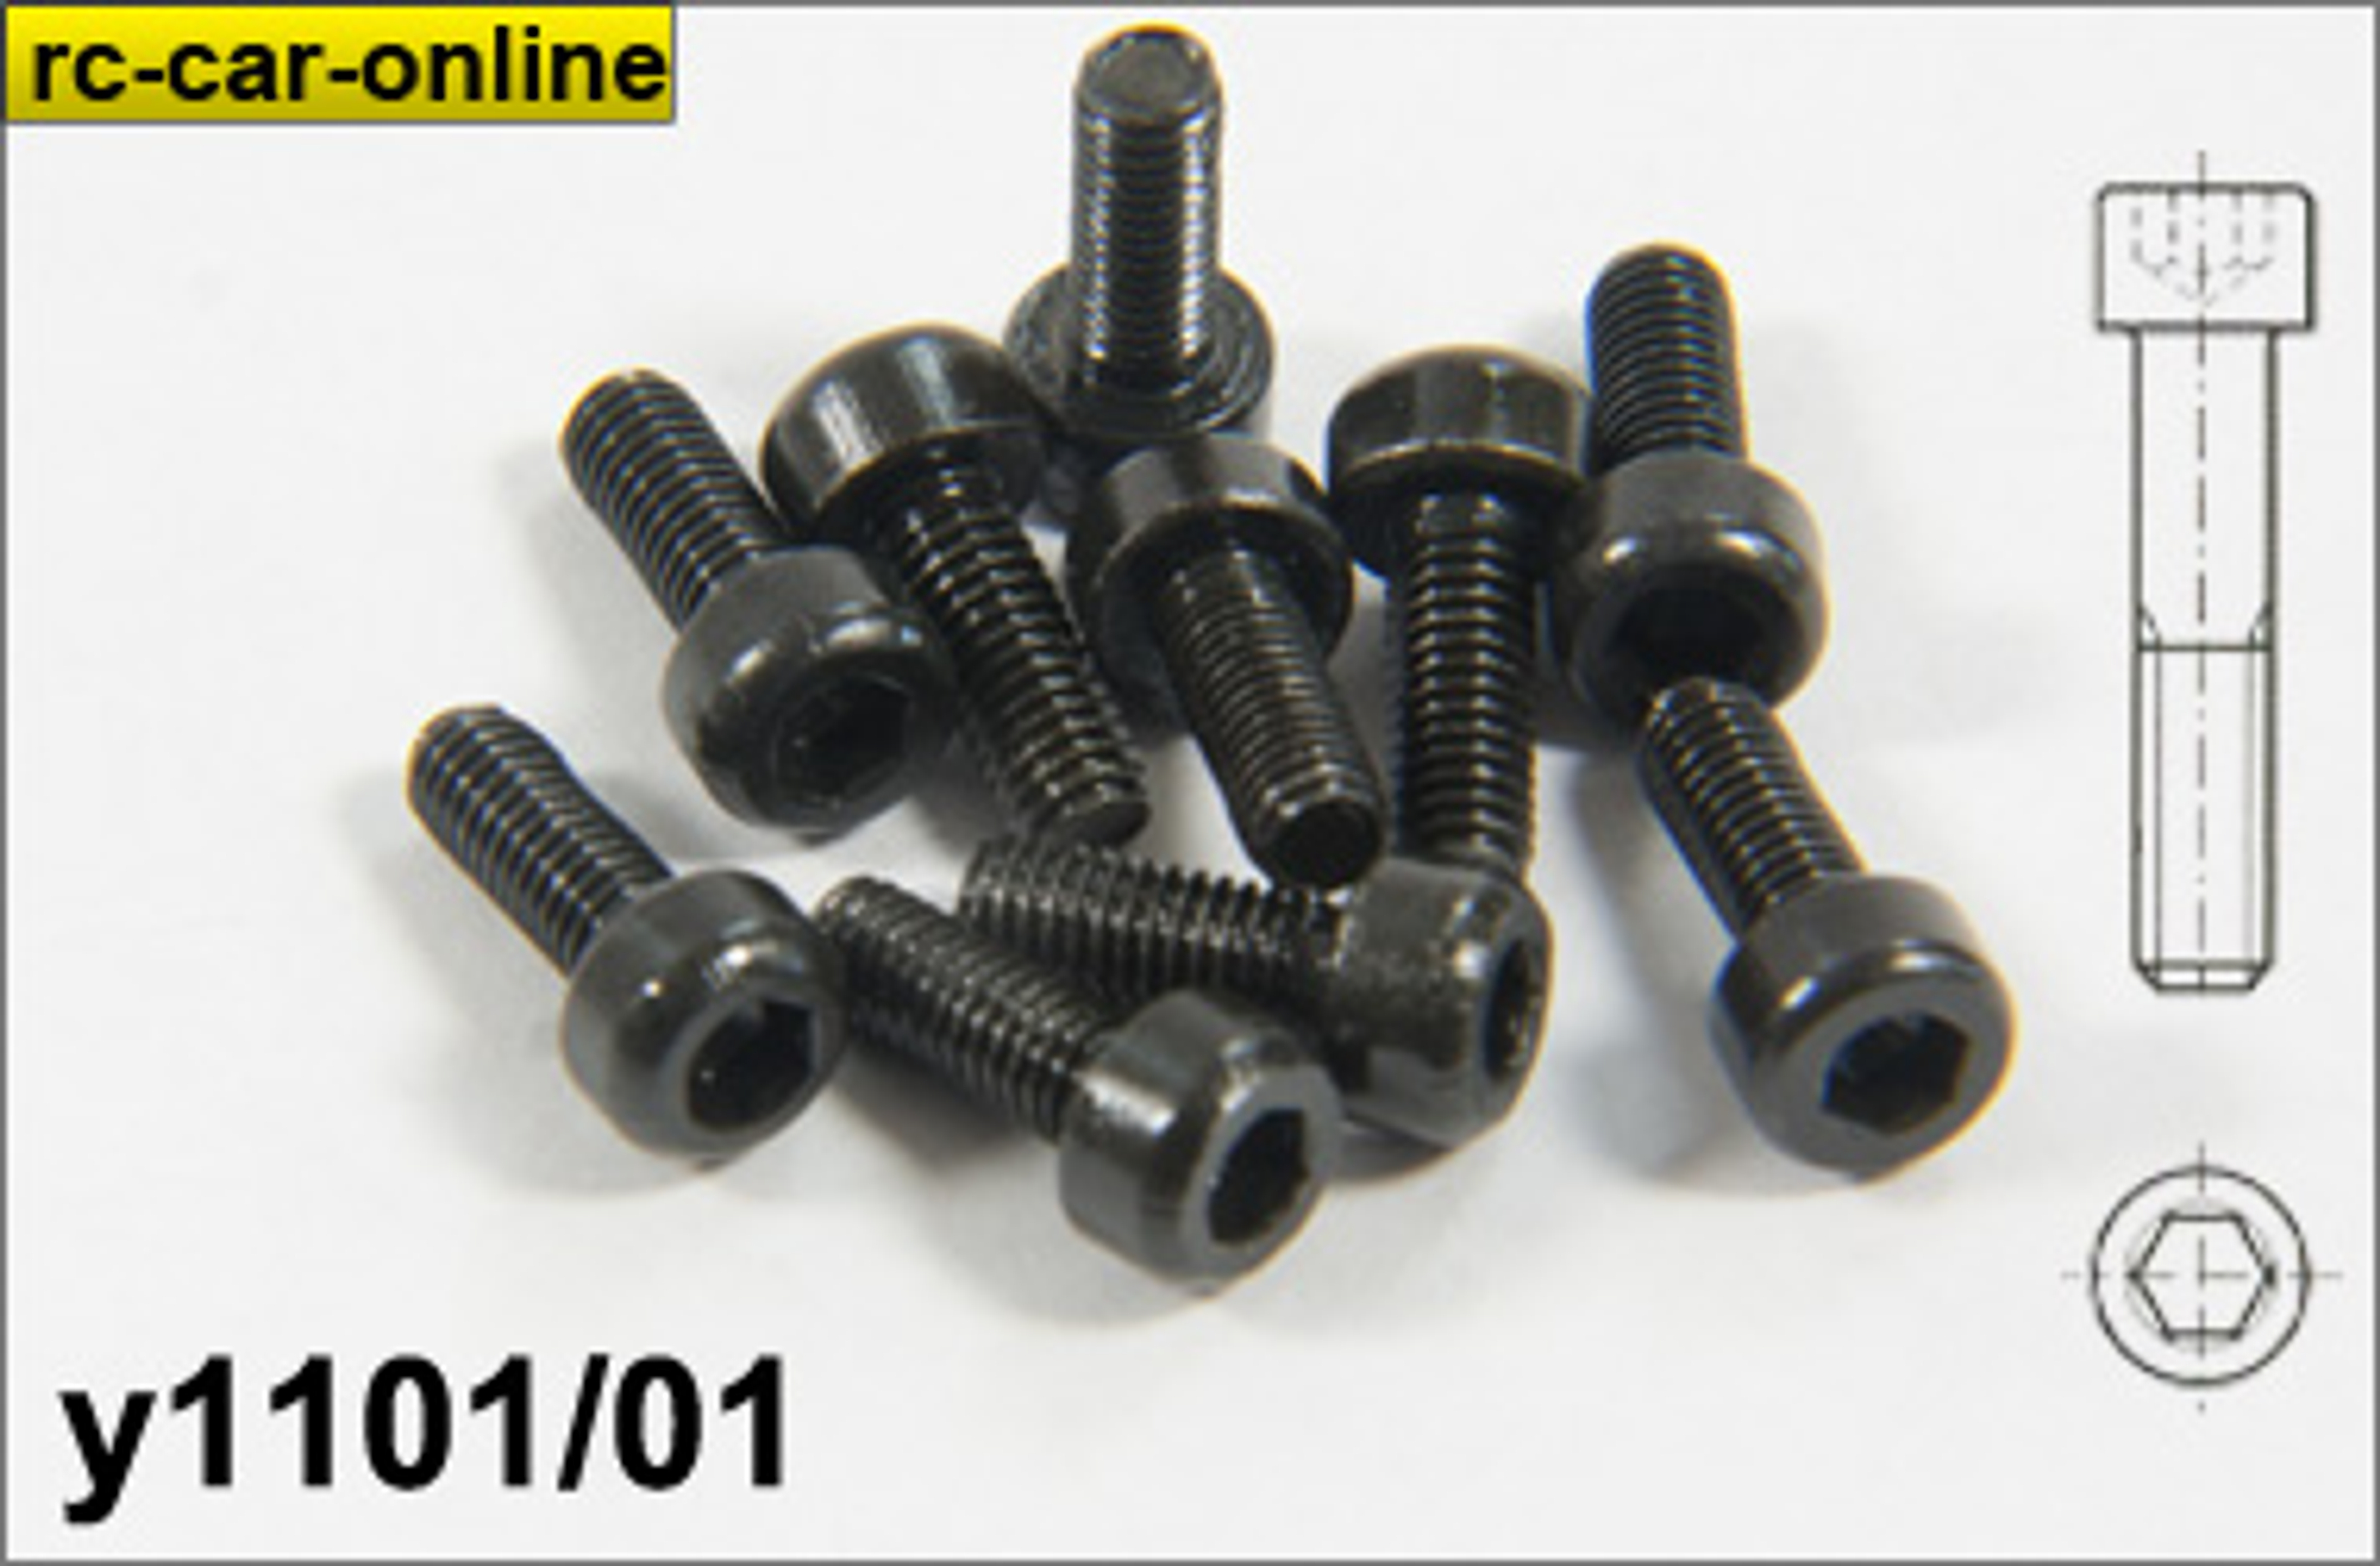 y1101 Servo horn mounting screws, 10 pcs